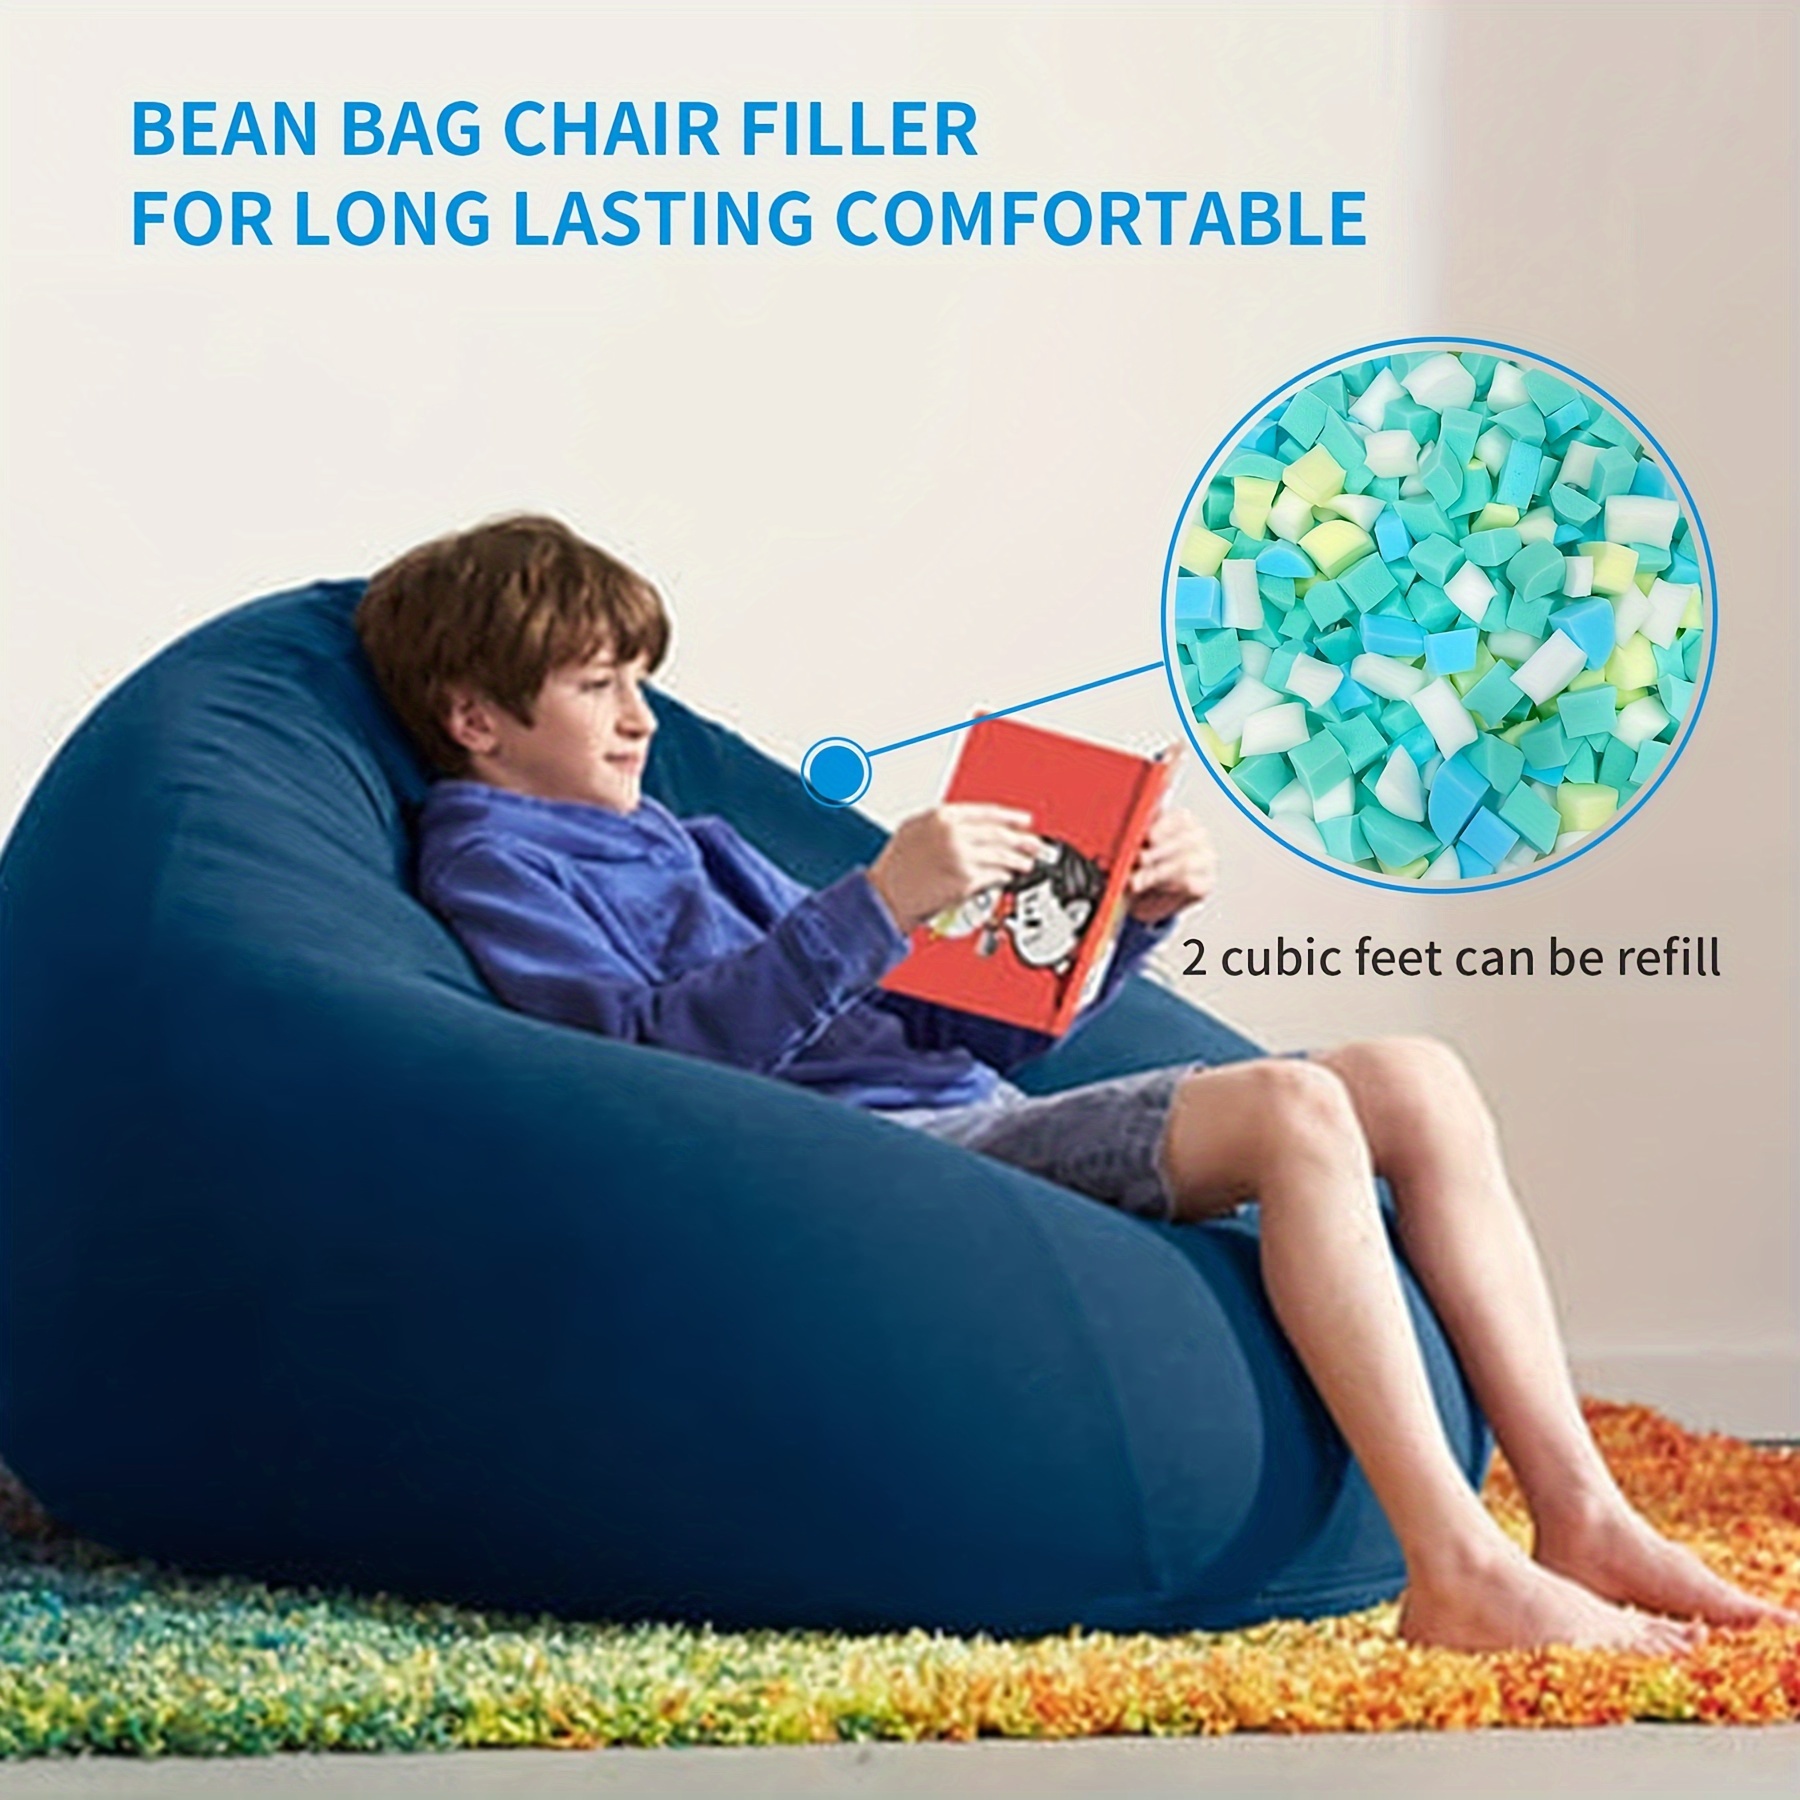 Styrofoam Particles Bean Bag, Foam Bean Bag Bed Chair